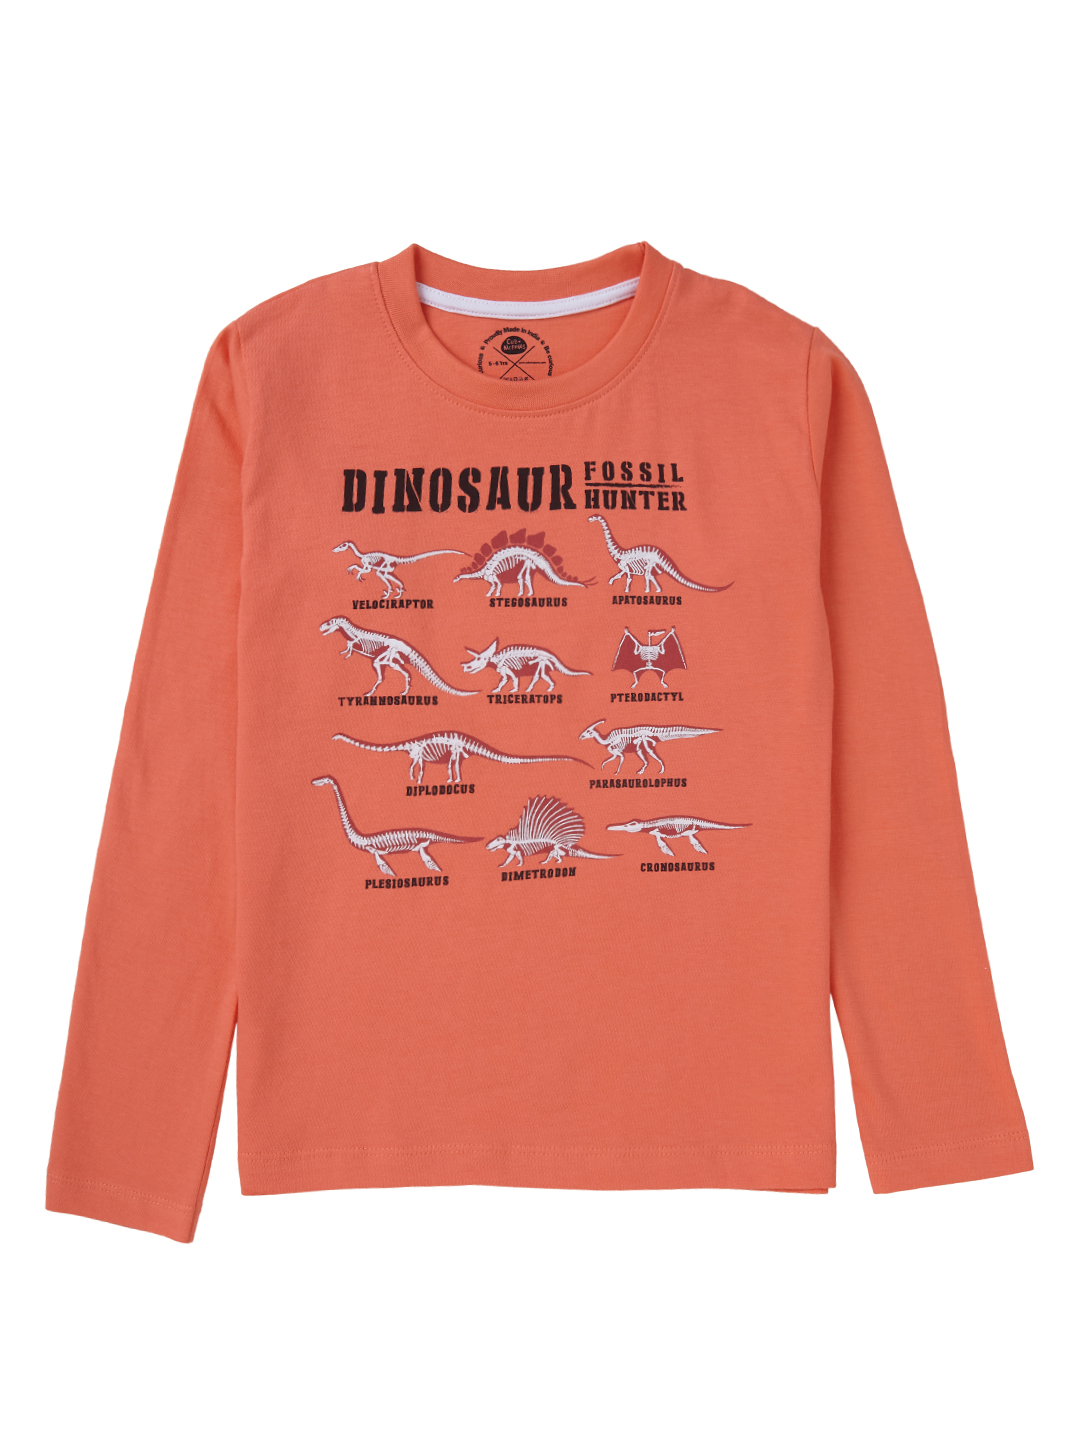 Brilliant Basics T-shirt for Boys - Dinosaur Print